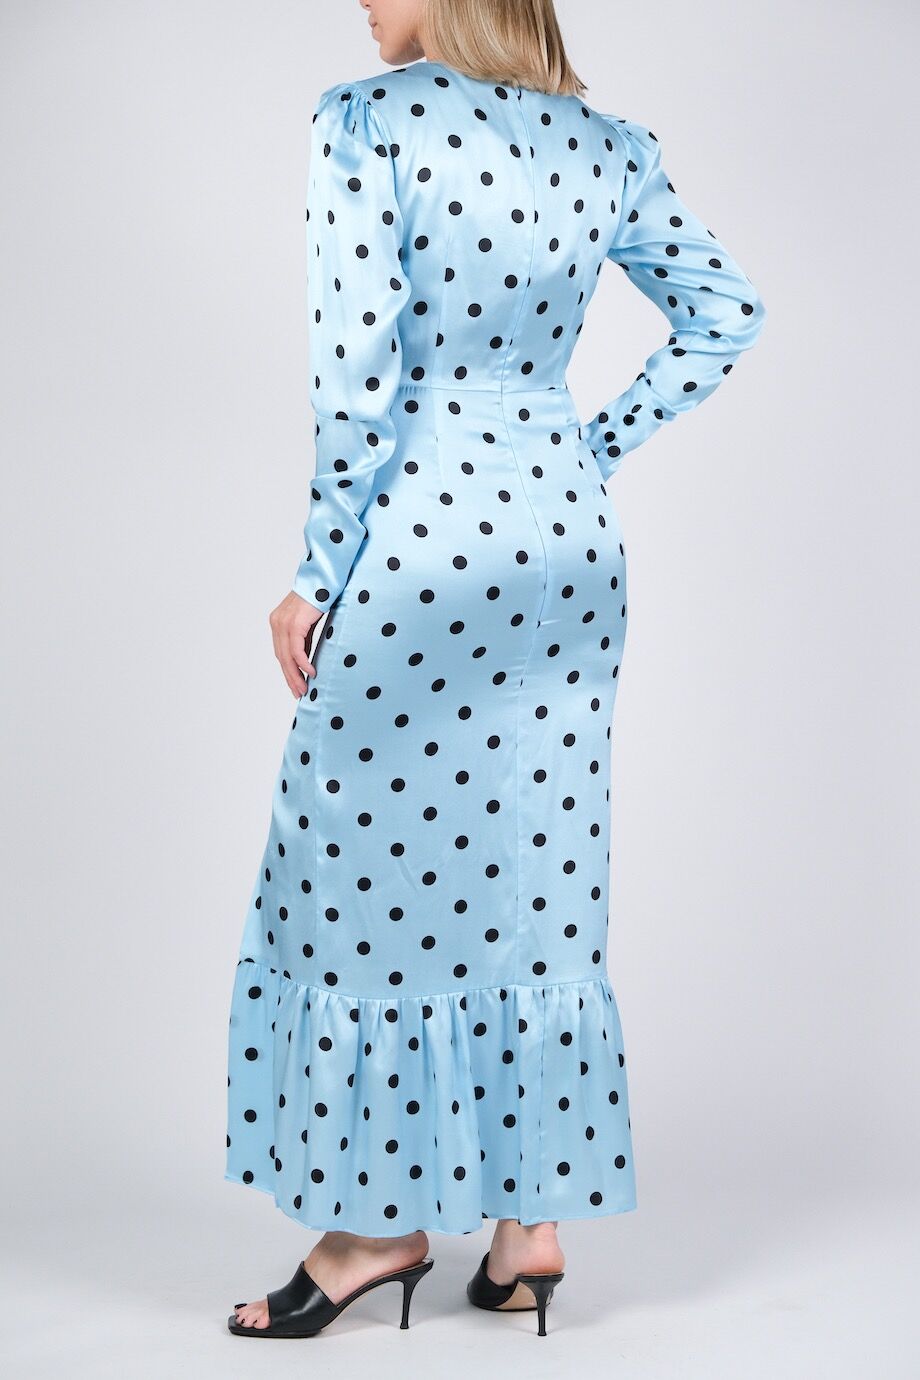 image 3 Шелковое платье голубого цвета в горошек